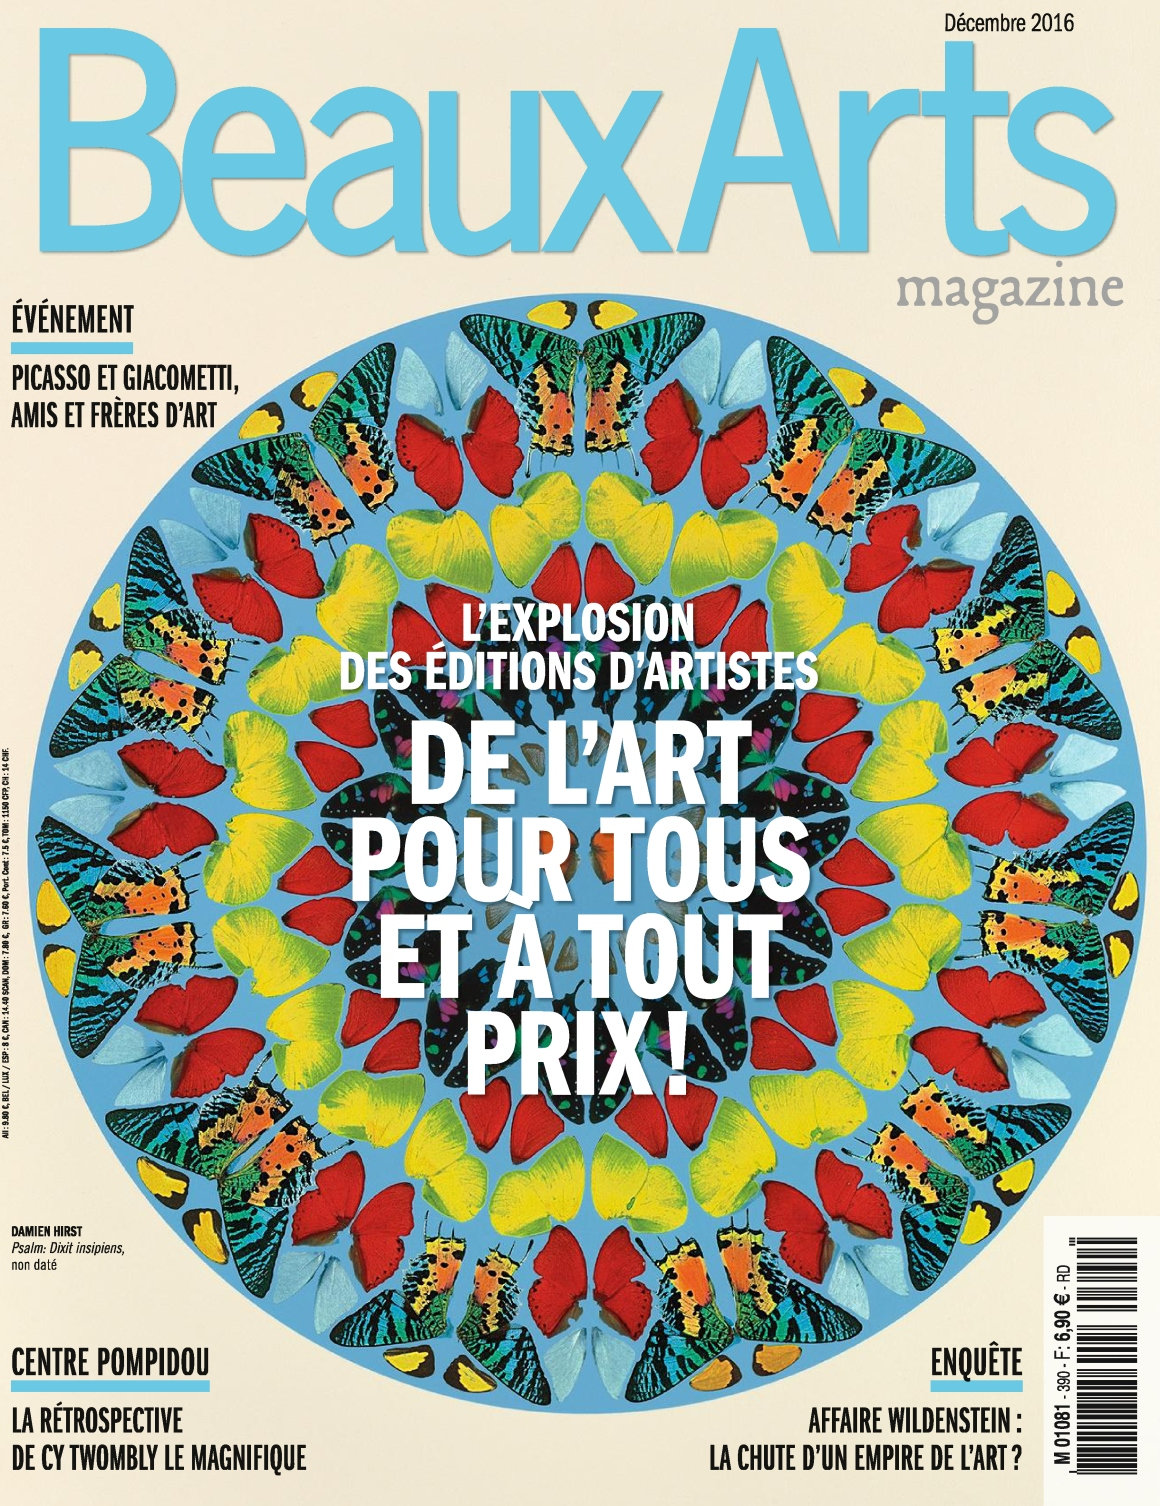 Beaux Arts magazine N°390 - Décembre 2016 